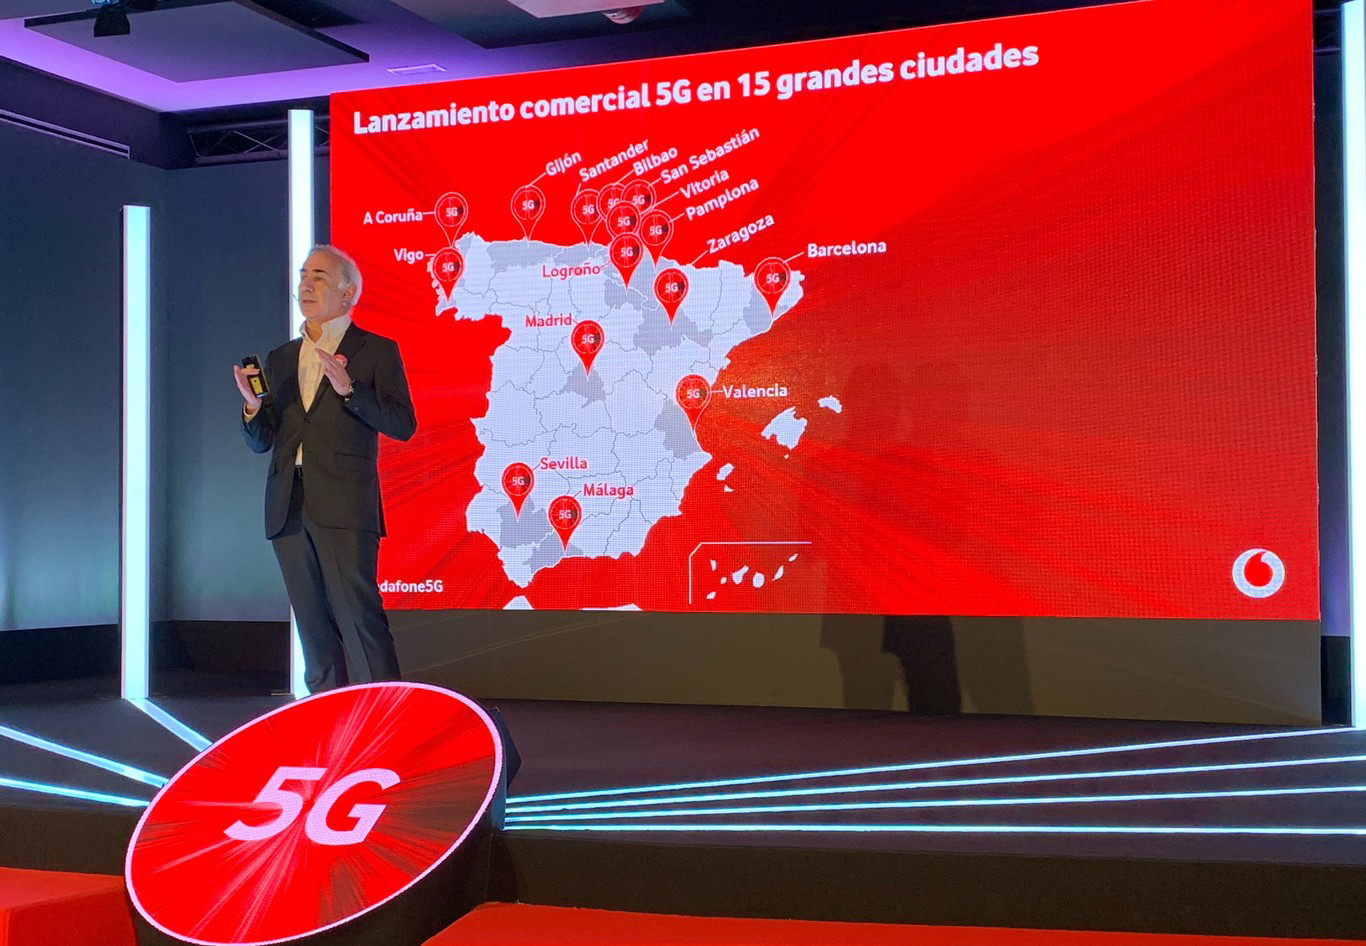 Cobertura 5G con Vodafone: todas las ciudades de España que ya tienen 5G